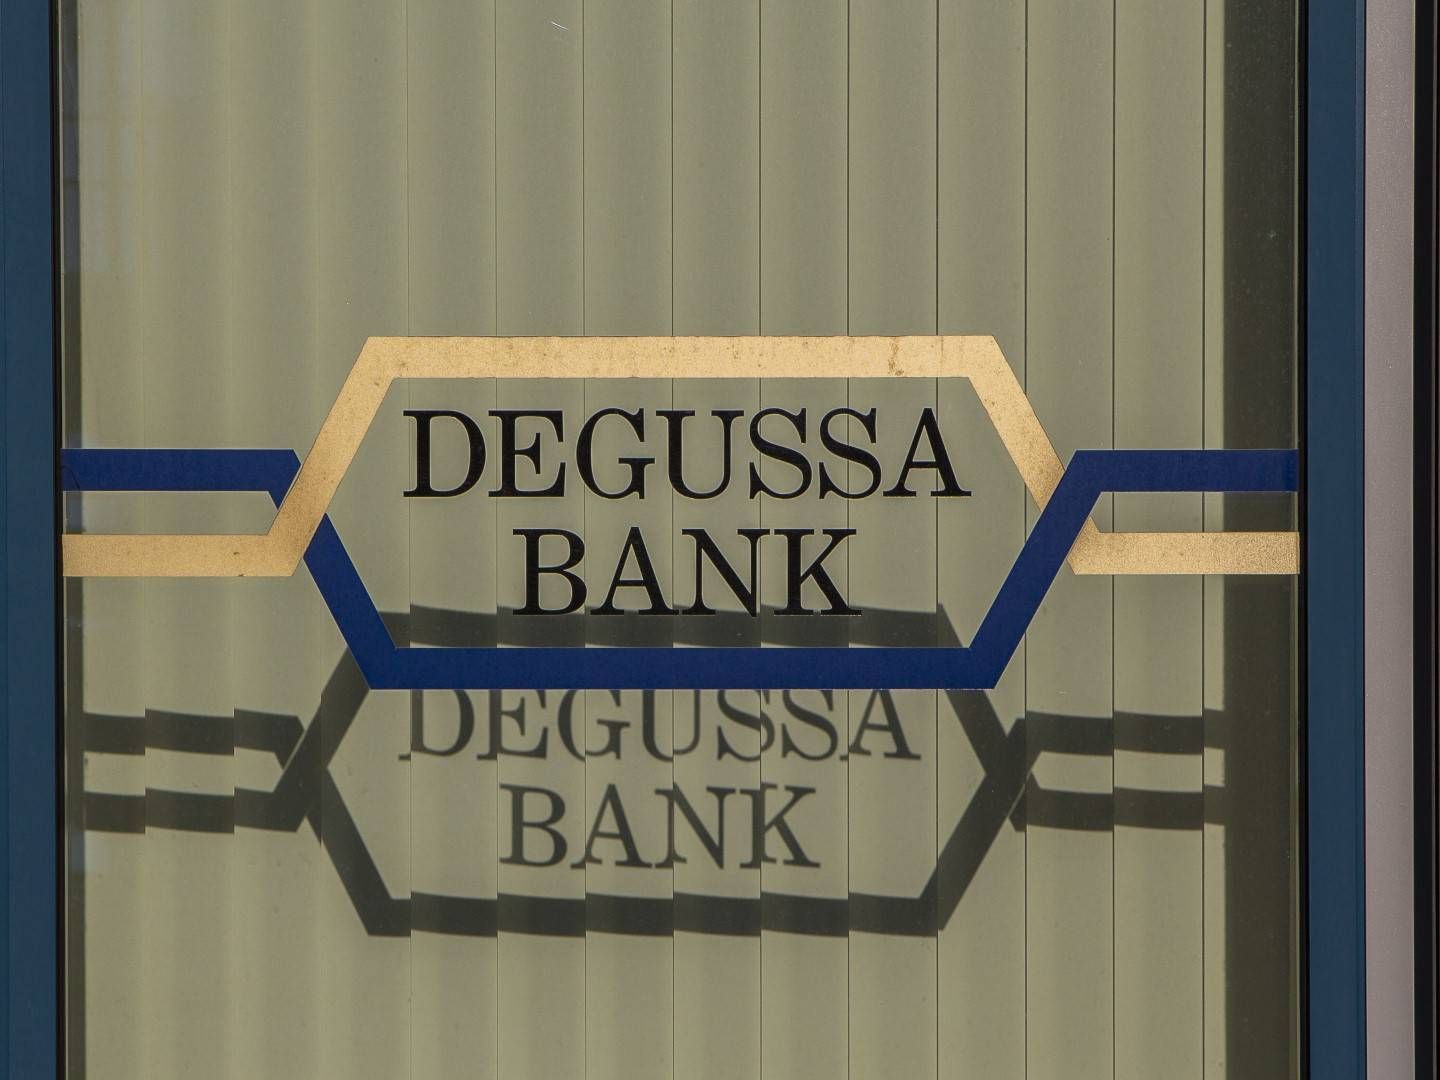 Logo der Degussa Bank am Fenster einer Filiale. | Foto: picture alliance / Goldmann